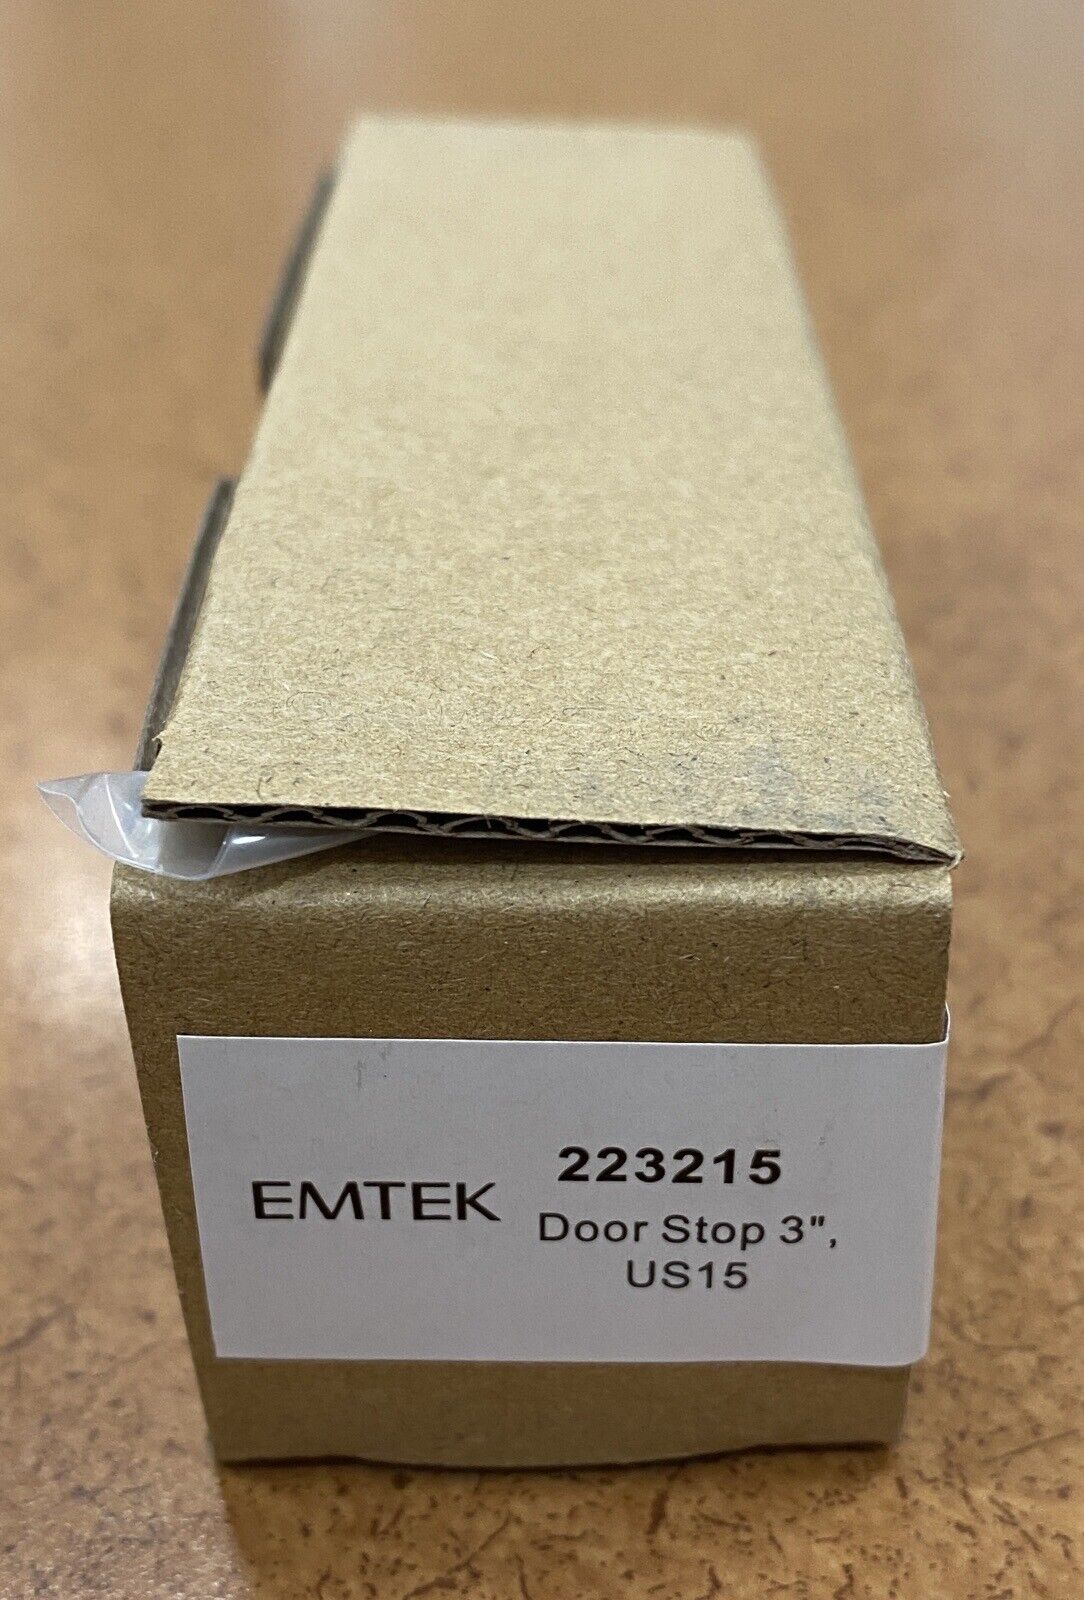 EMTEK 2232 15 ASSA ABLOY Door stop 3" US 15 Satin Nickel - New in box EMTEK 2232 - фотография #4